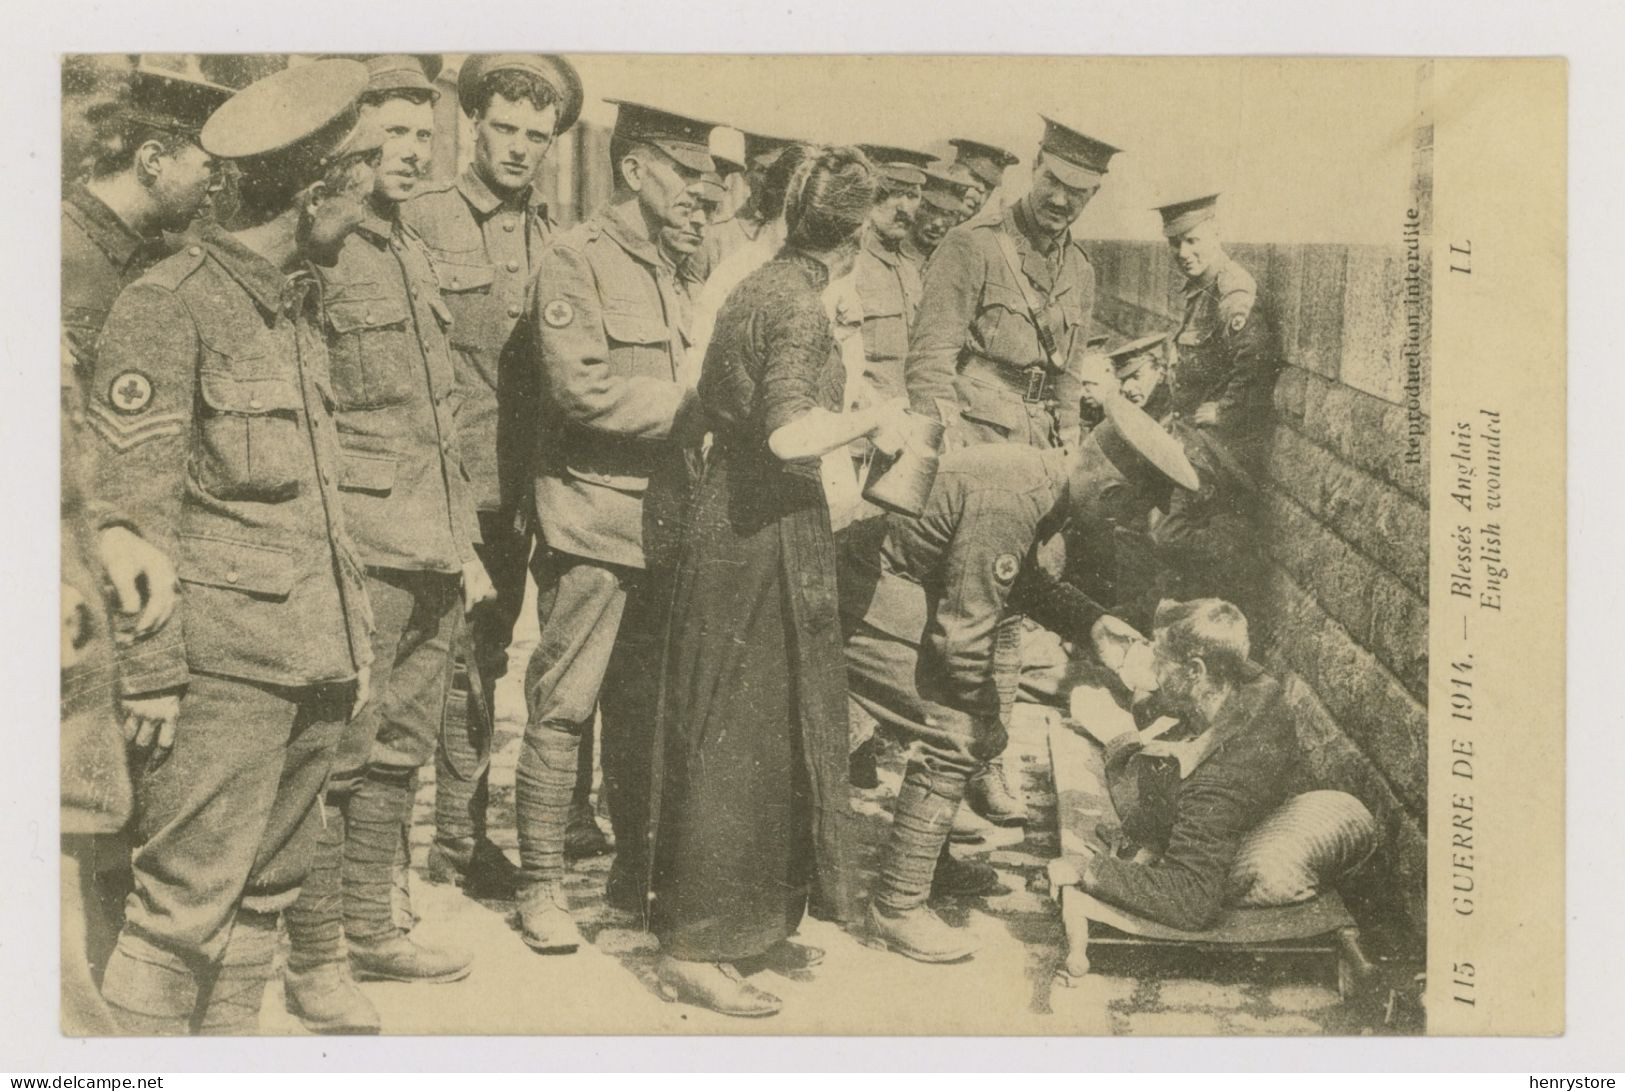 GUERRE DE 1914 : Blessés Anglais - Croix Rouge (F7248) - War 1914-18